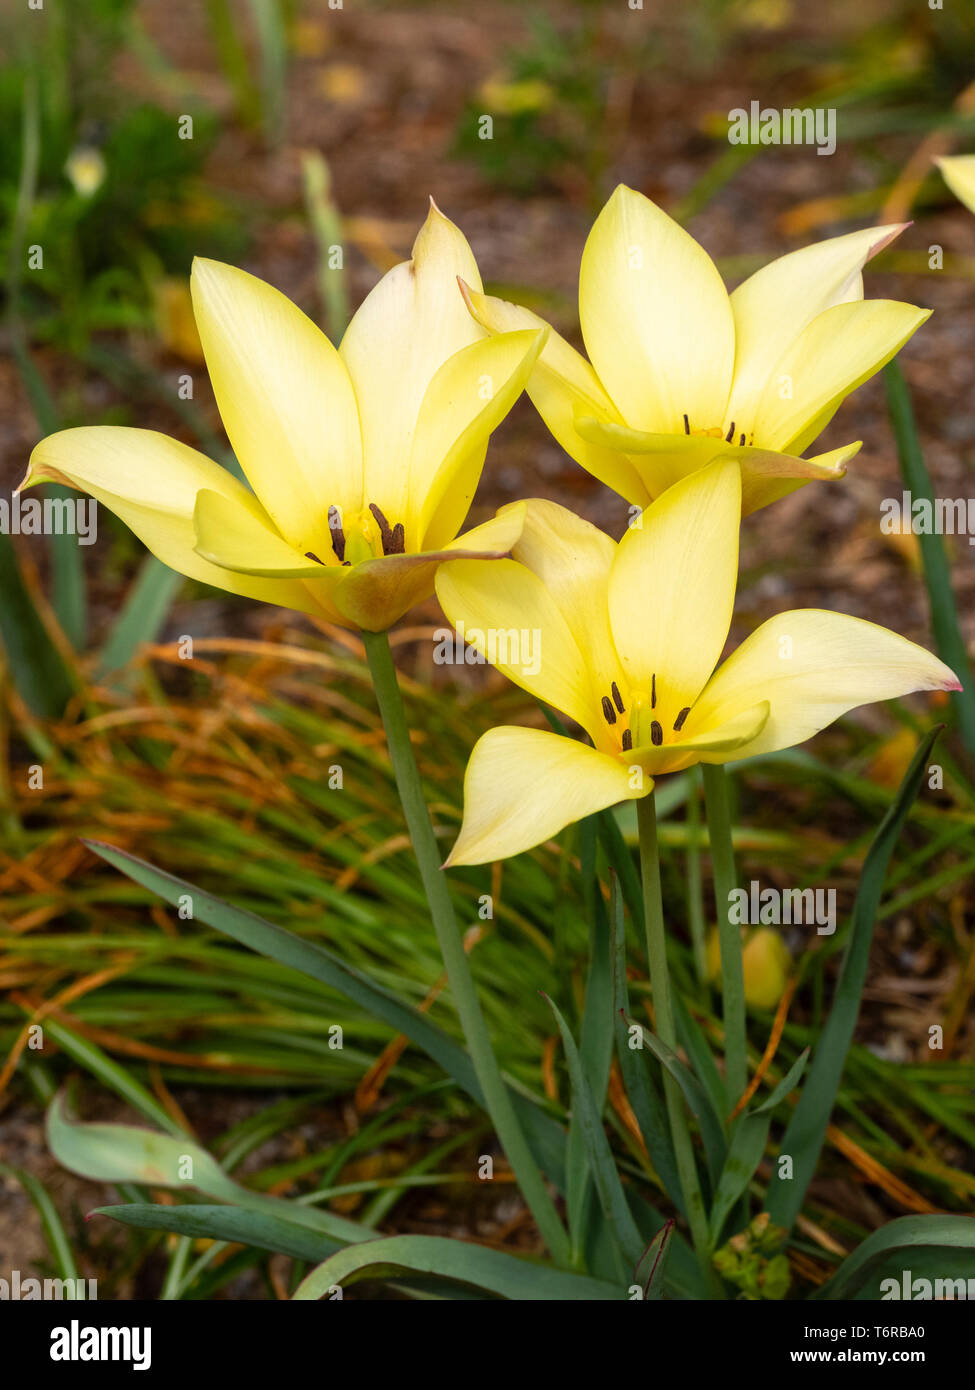 Fleurs de Printemps jaune de la tulipe botanique hardy, Tulipa linifolia Batalinii (groupe) Banque D'Images